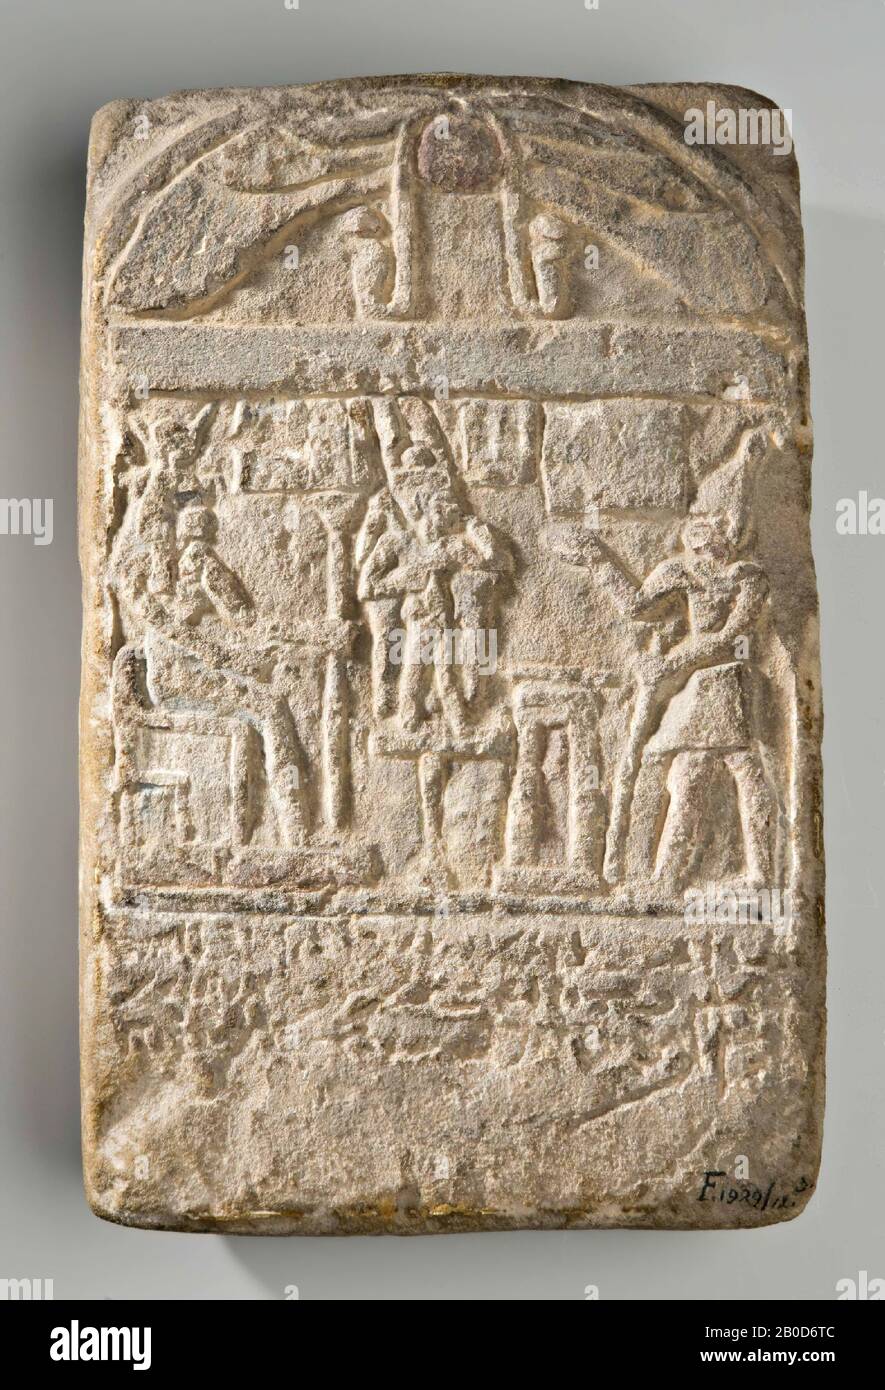 Parthenios, round arch, stele, limestone, 29.5 x 18.5 x 8 cm, Greco-Roman Period, Roman imperial age, 1st century AD, Egypt Stock Photo